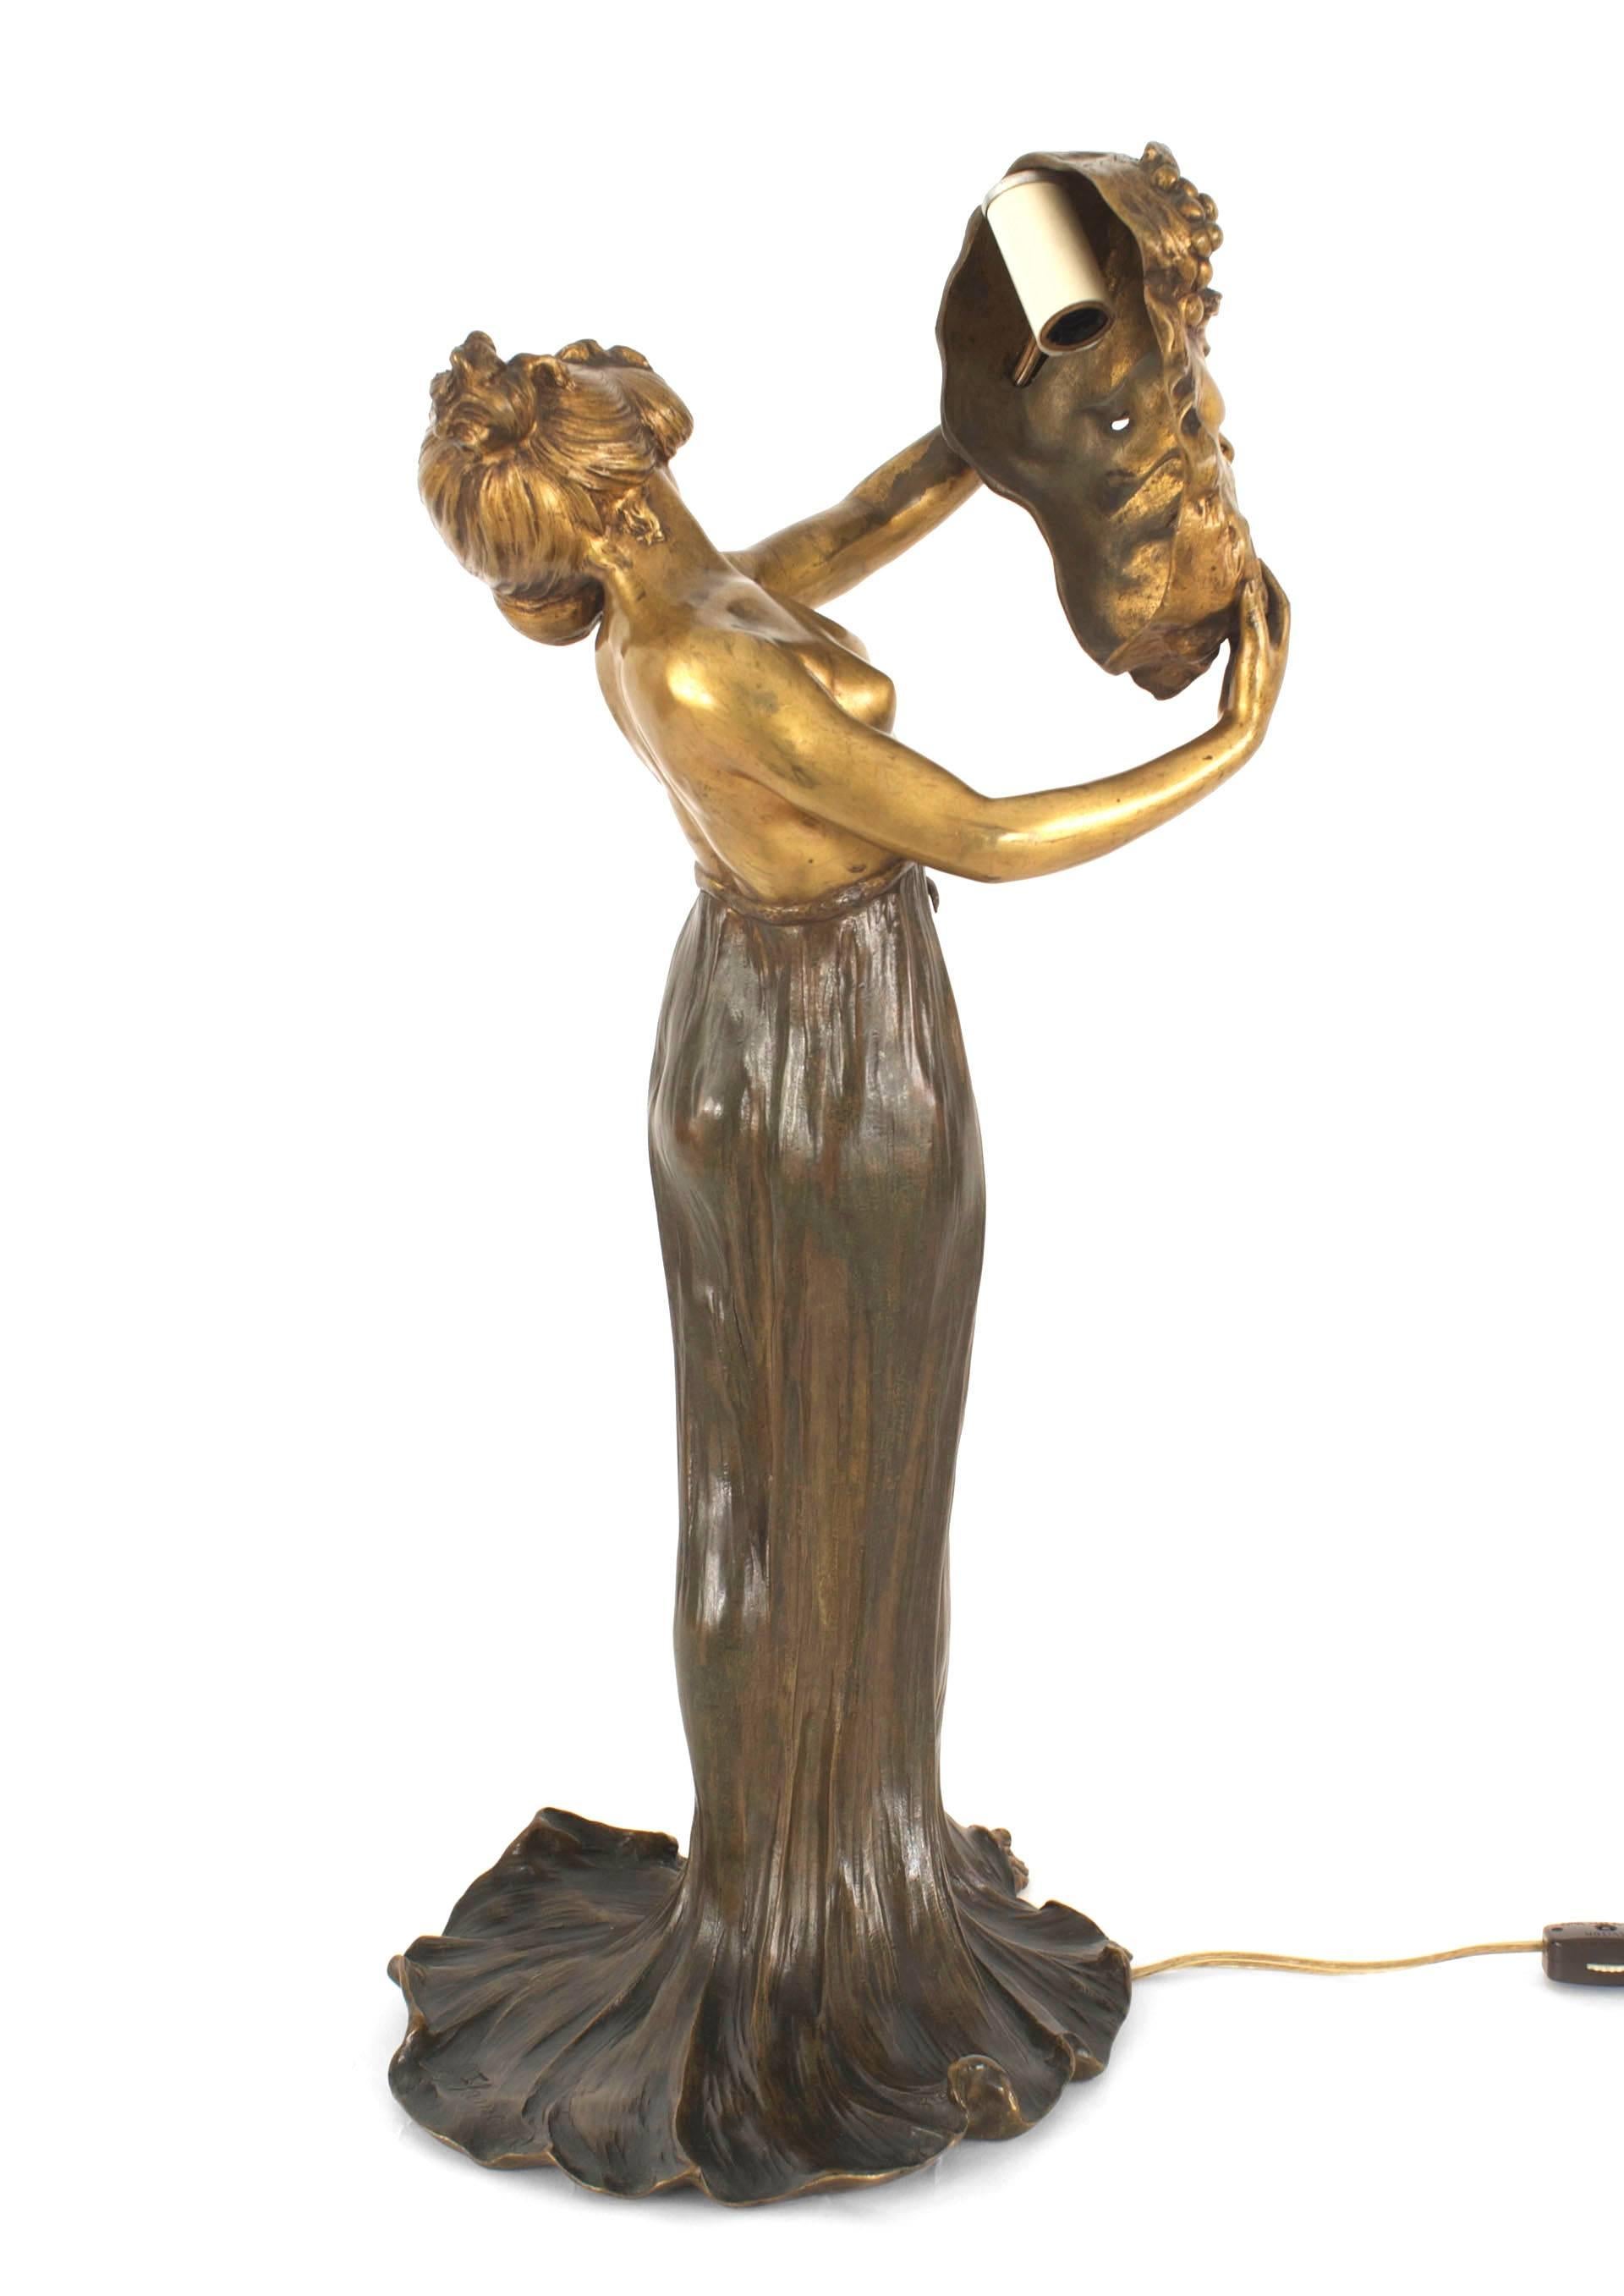 Lampe de table en bronze Art Nouveau représentant une femme tenant un masque d'homme grec (signée : FLAMAND).
 